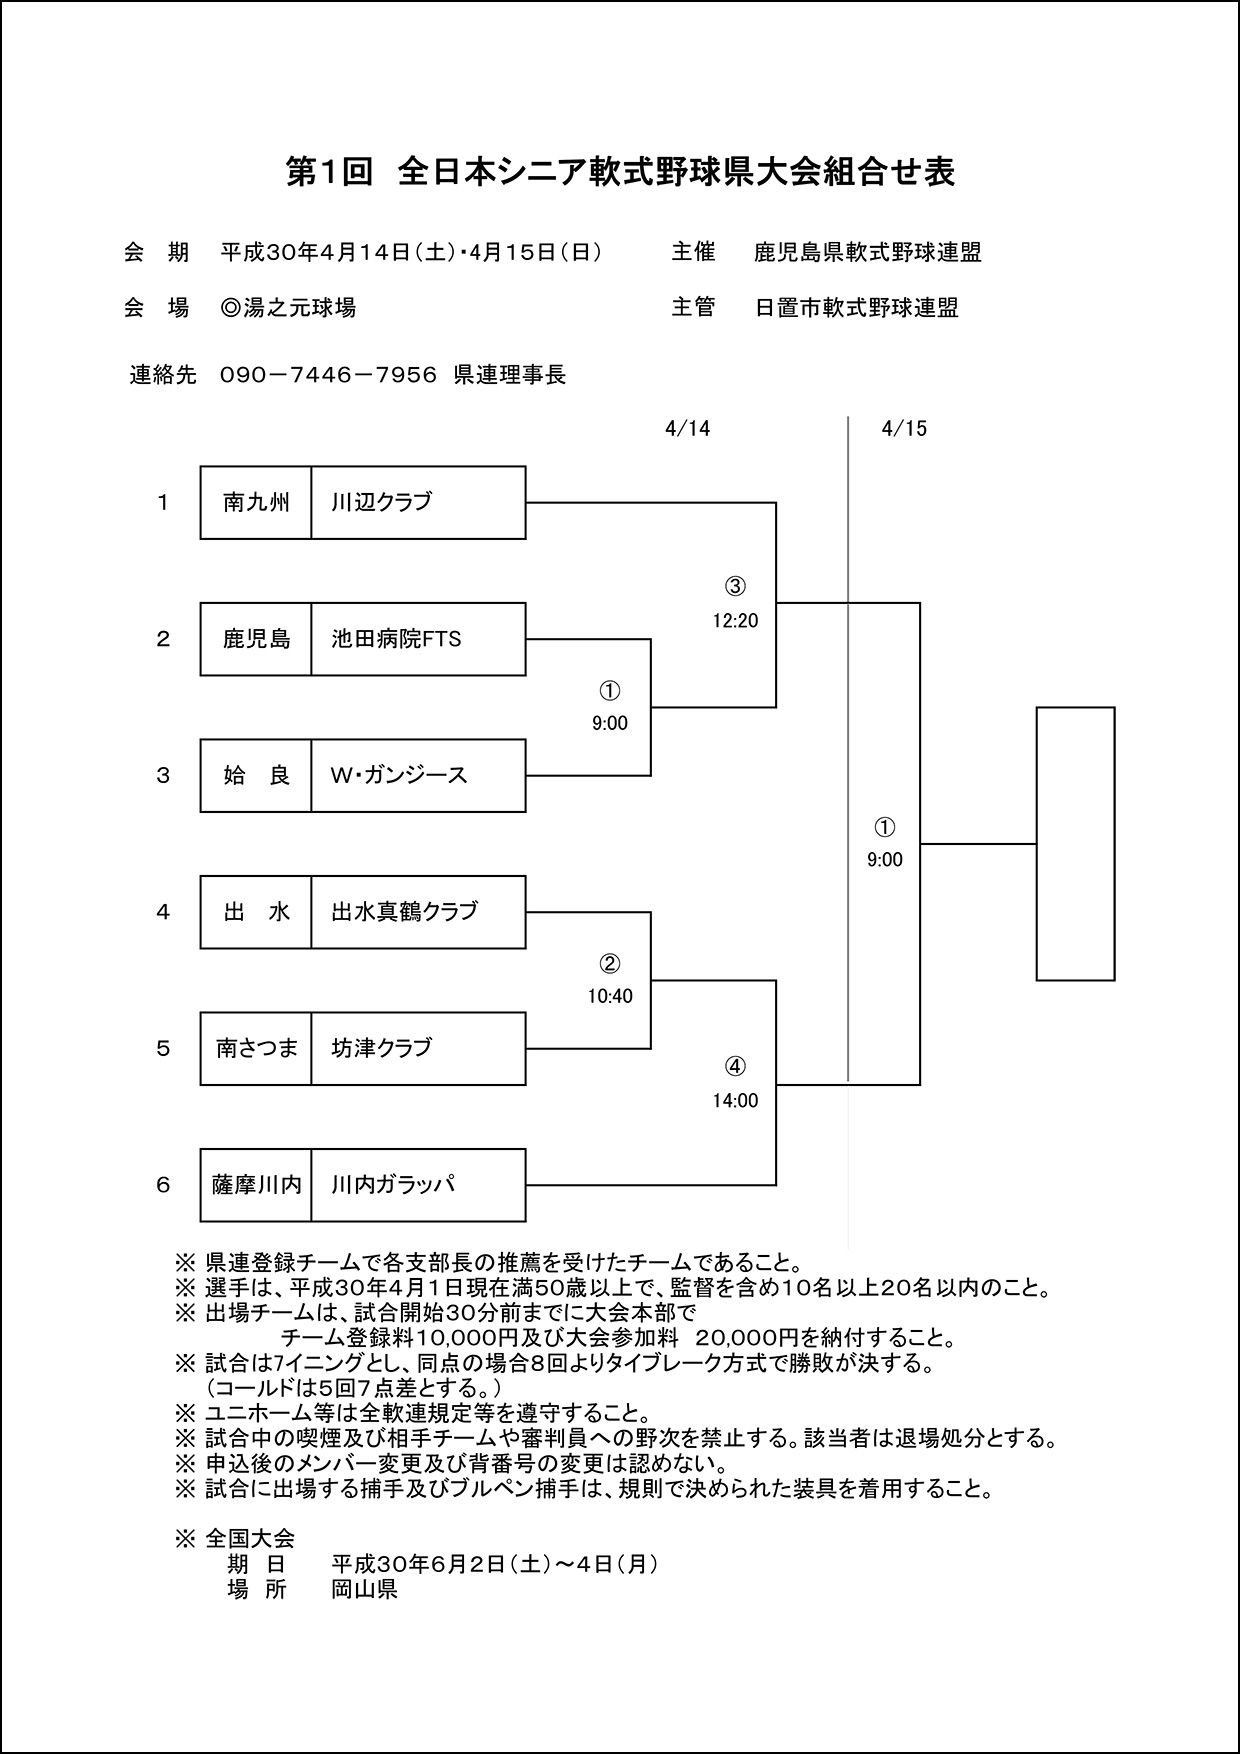 【組合せ】第1回全日本シニア軟式野球県大会組合せ表